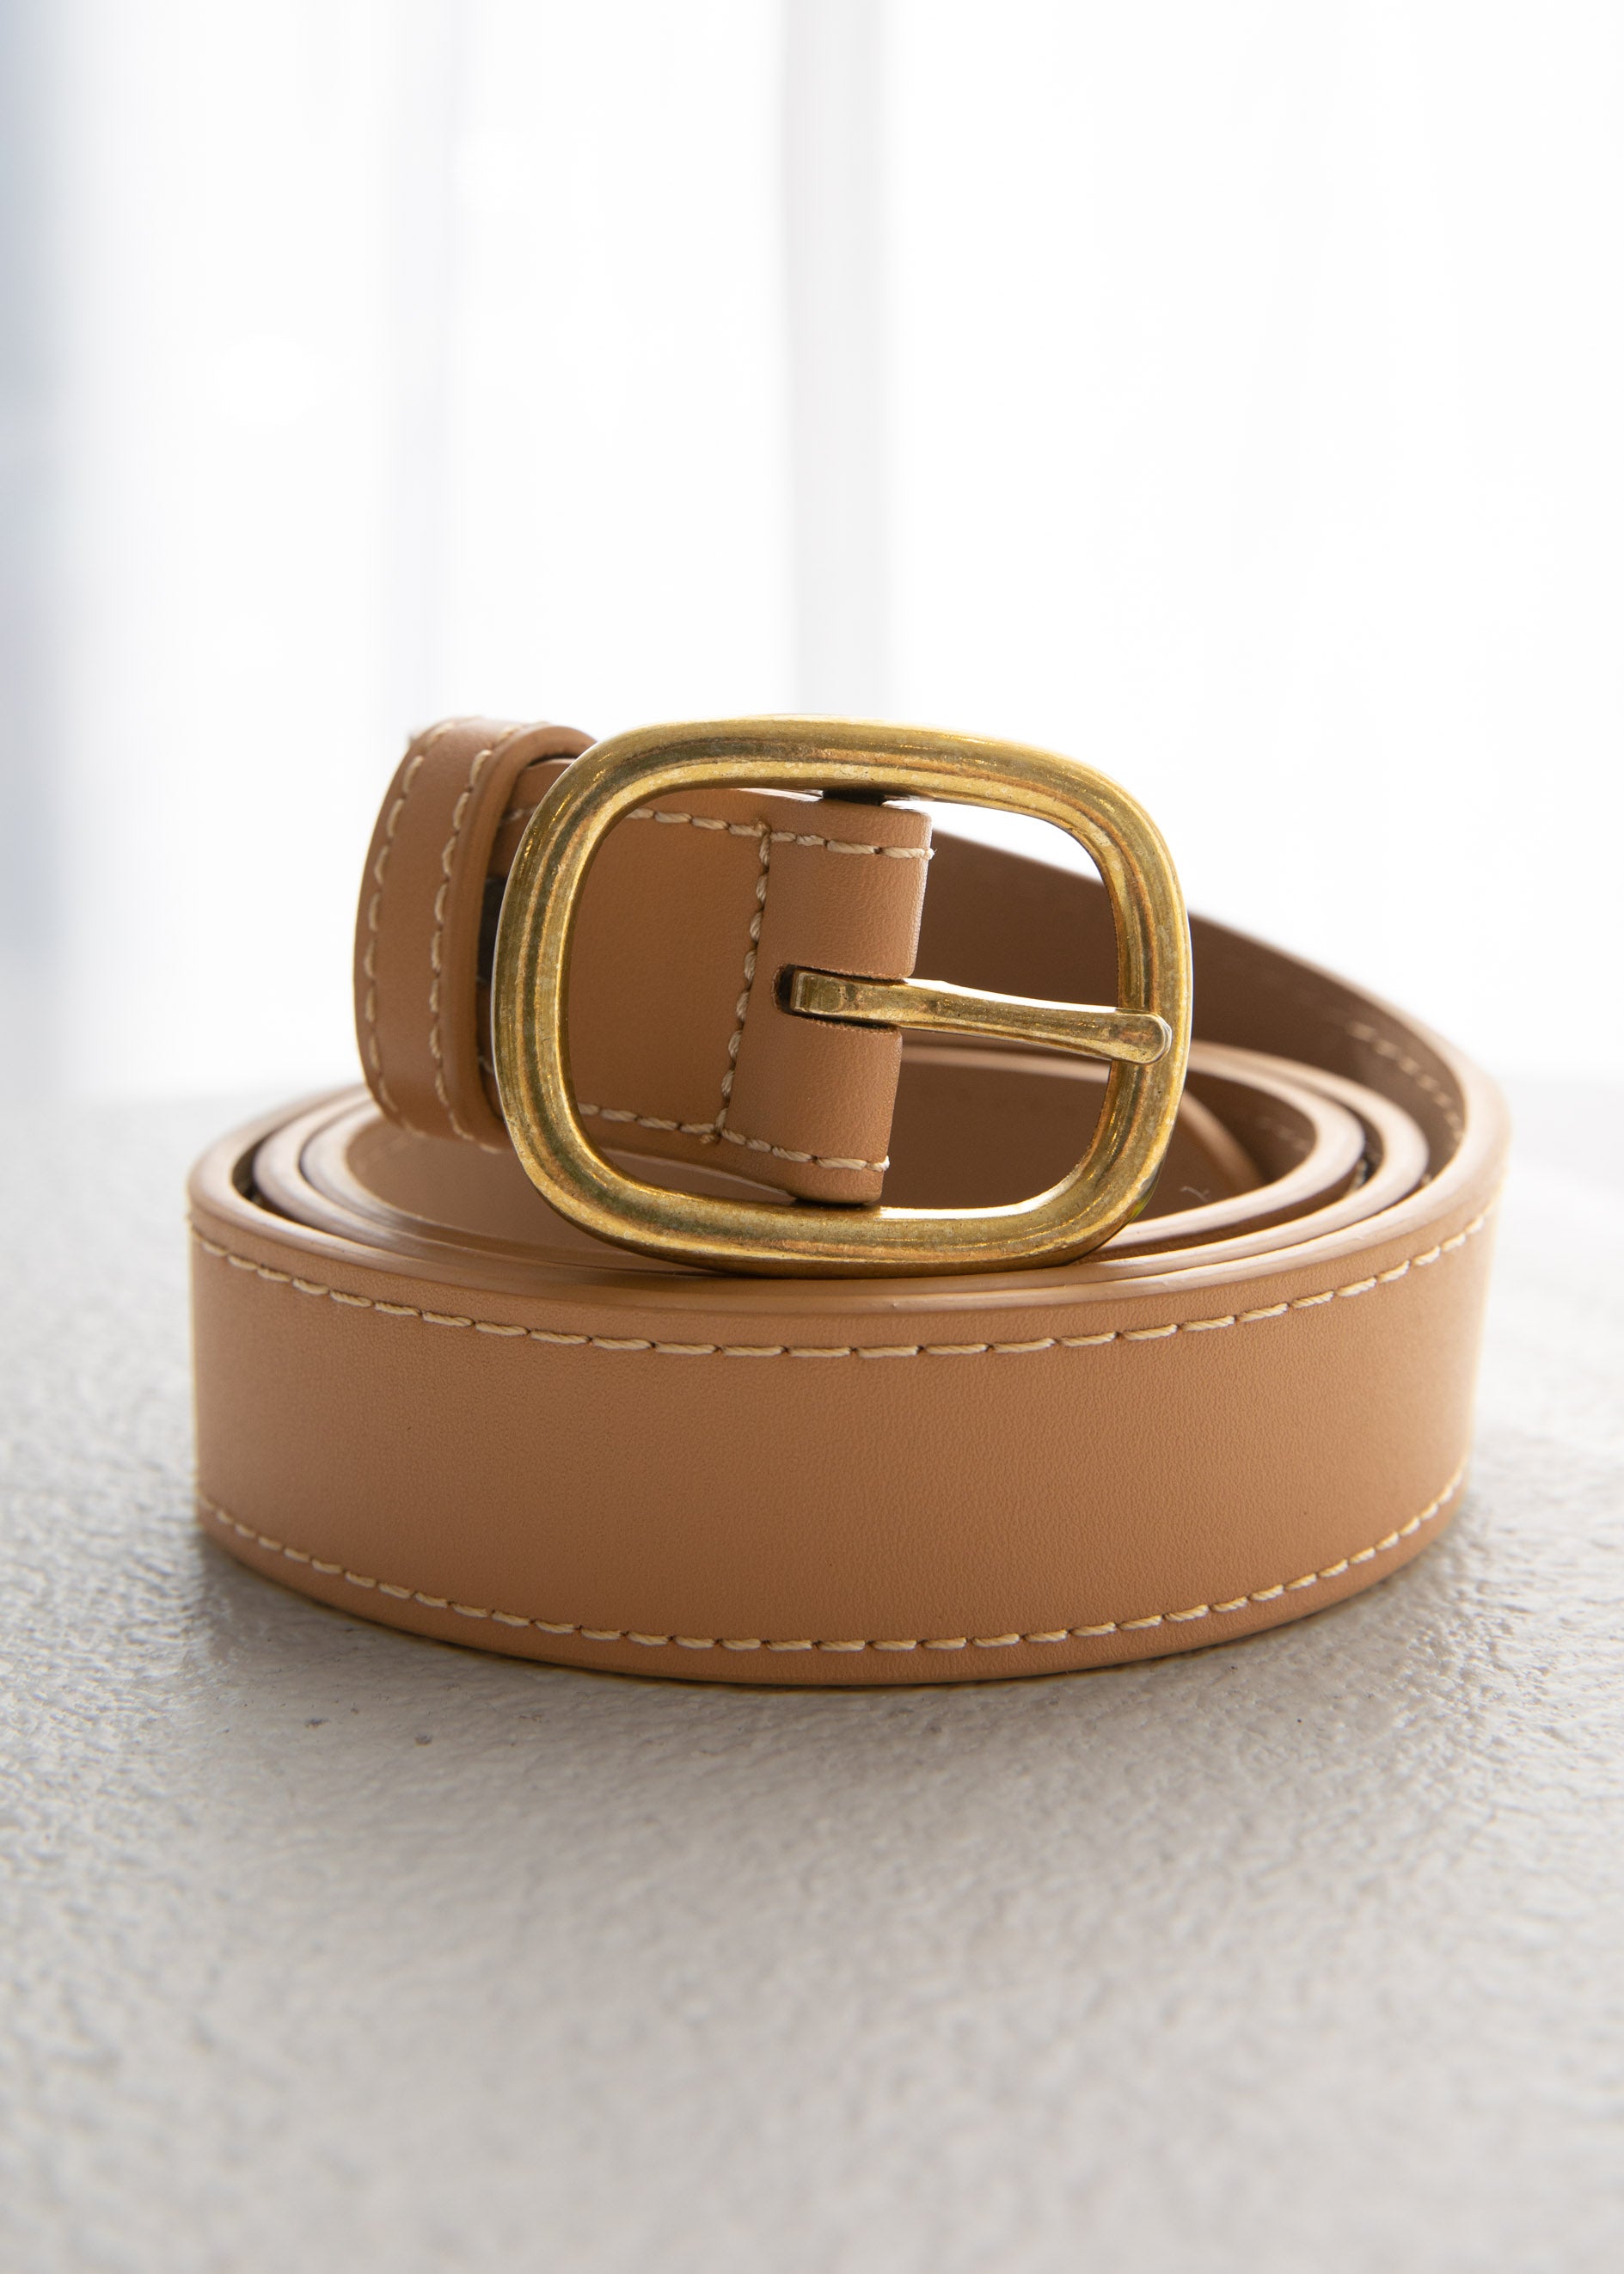 Kodey Leather Look Belt - Beige